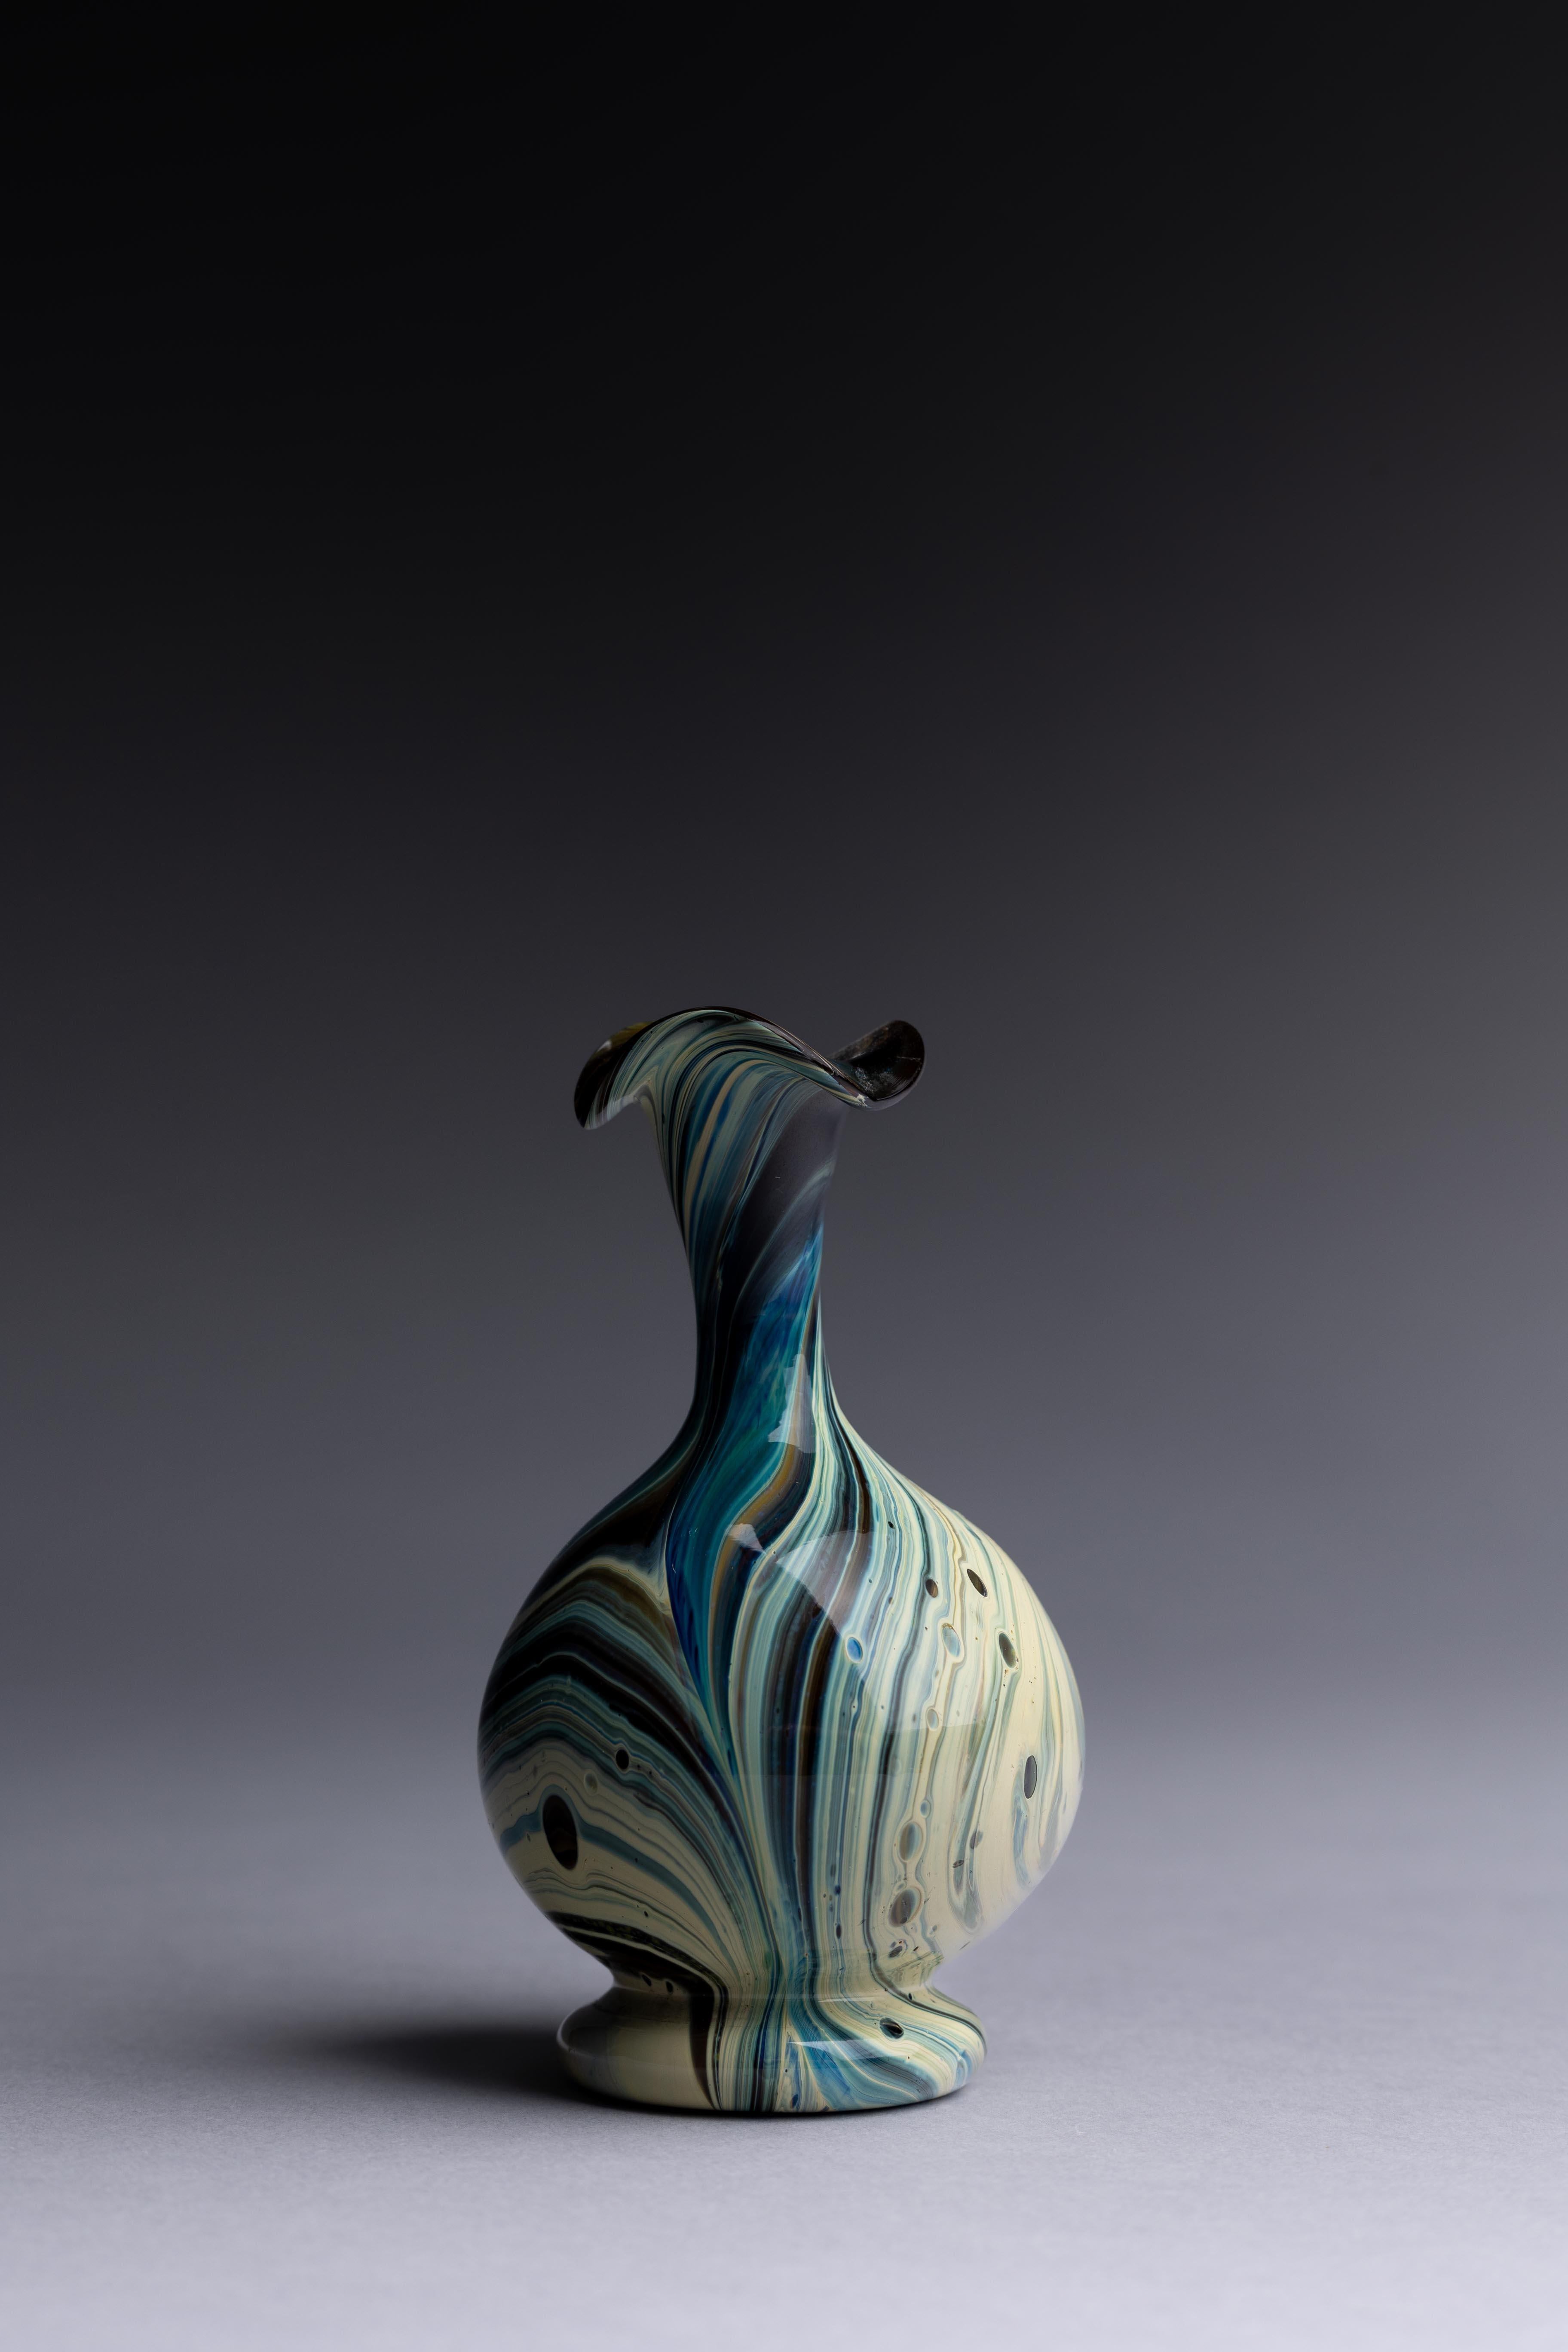 Vase en verre de Murano fabriqué par les maîtres verriers Salviati & Co à la fin du XIXe siècle, avec un magnifique motif marbré de calcédoine.

Ce vase en verre de Murano, fabriqué par Salviati & Co. vers 1880, témoigne d'une maîtrise